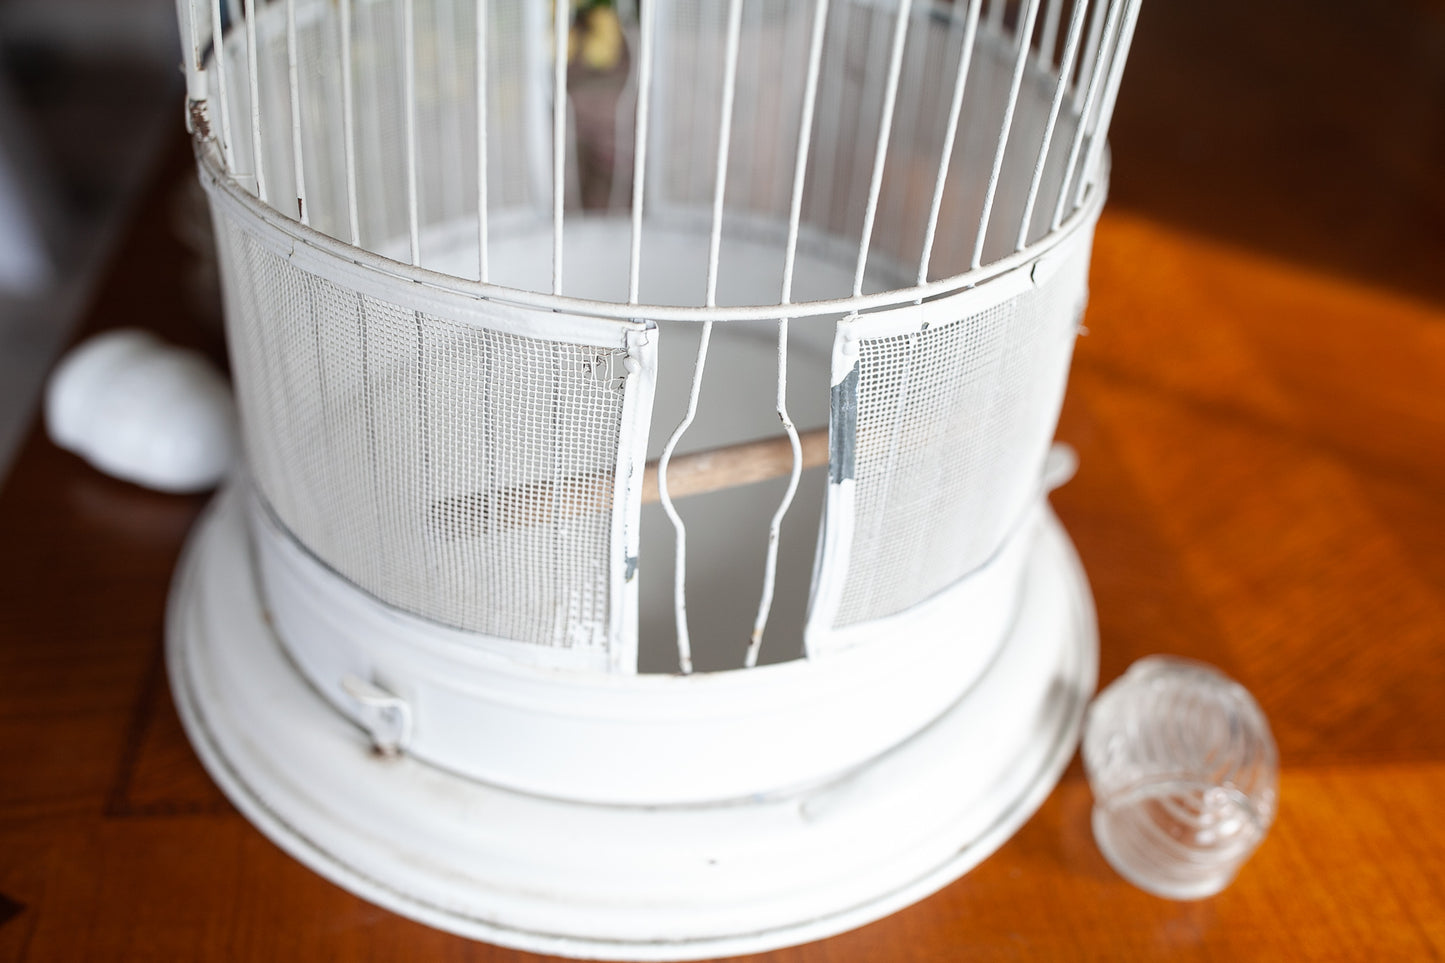 Vintage Bird Cage -Metal Birdcage - White Bird Cage